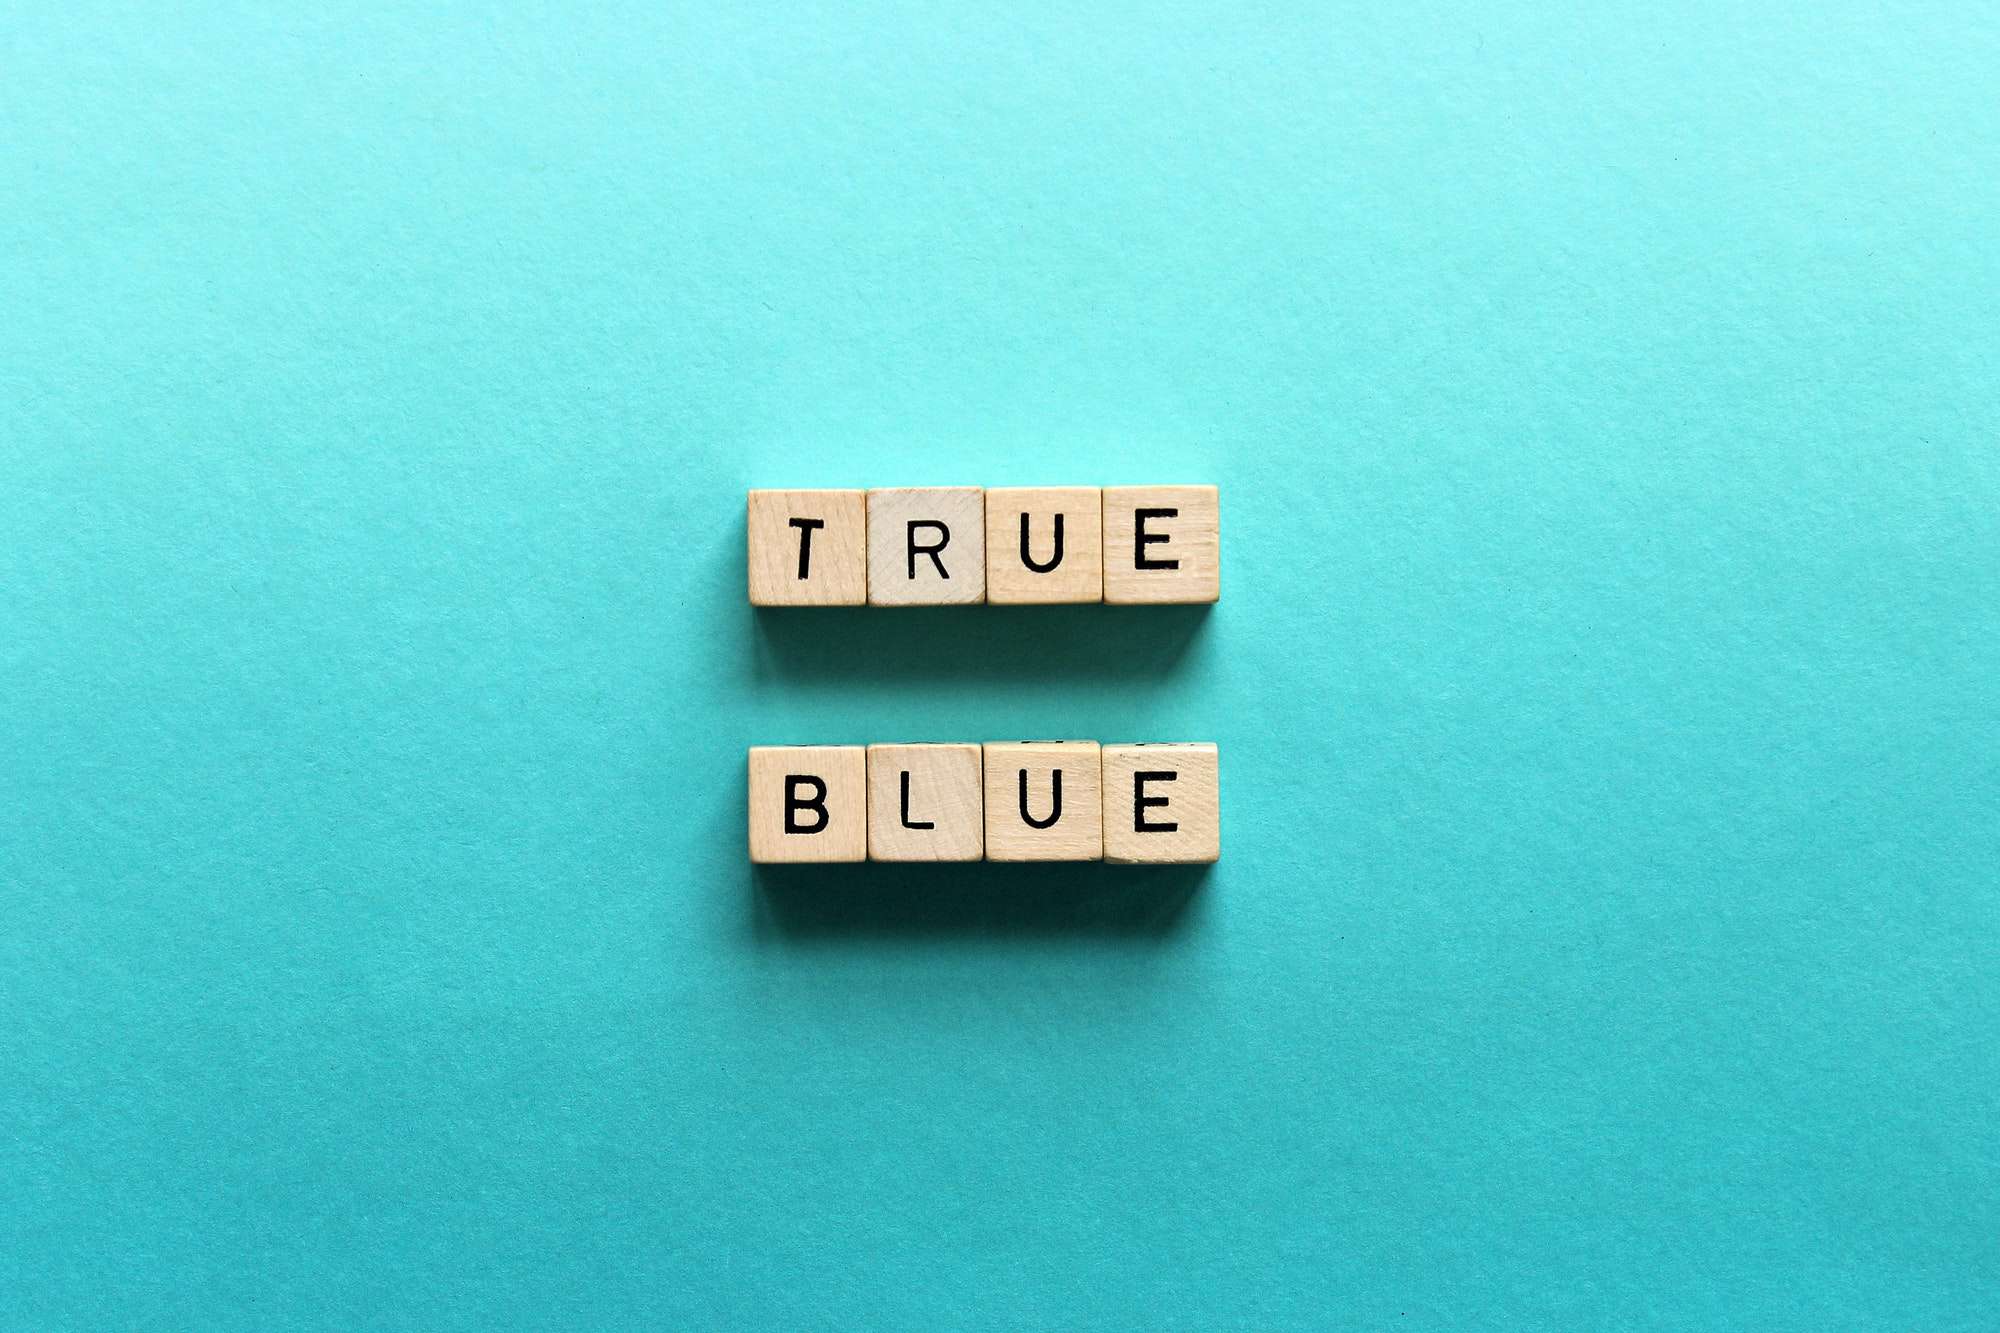 True blue word dice in blue